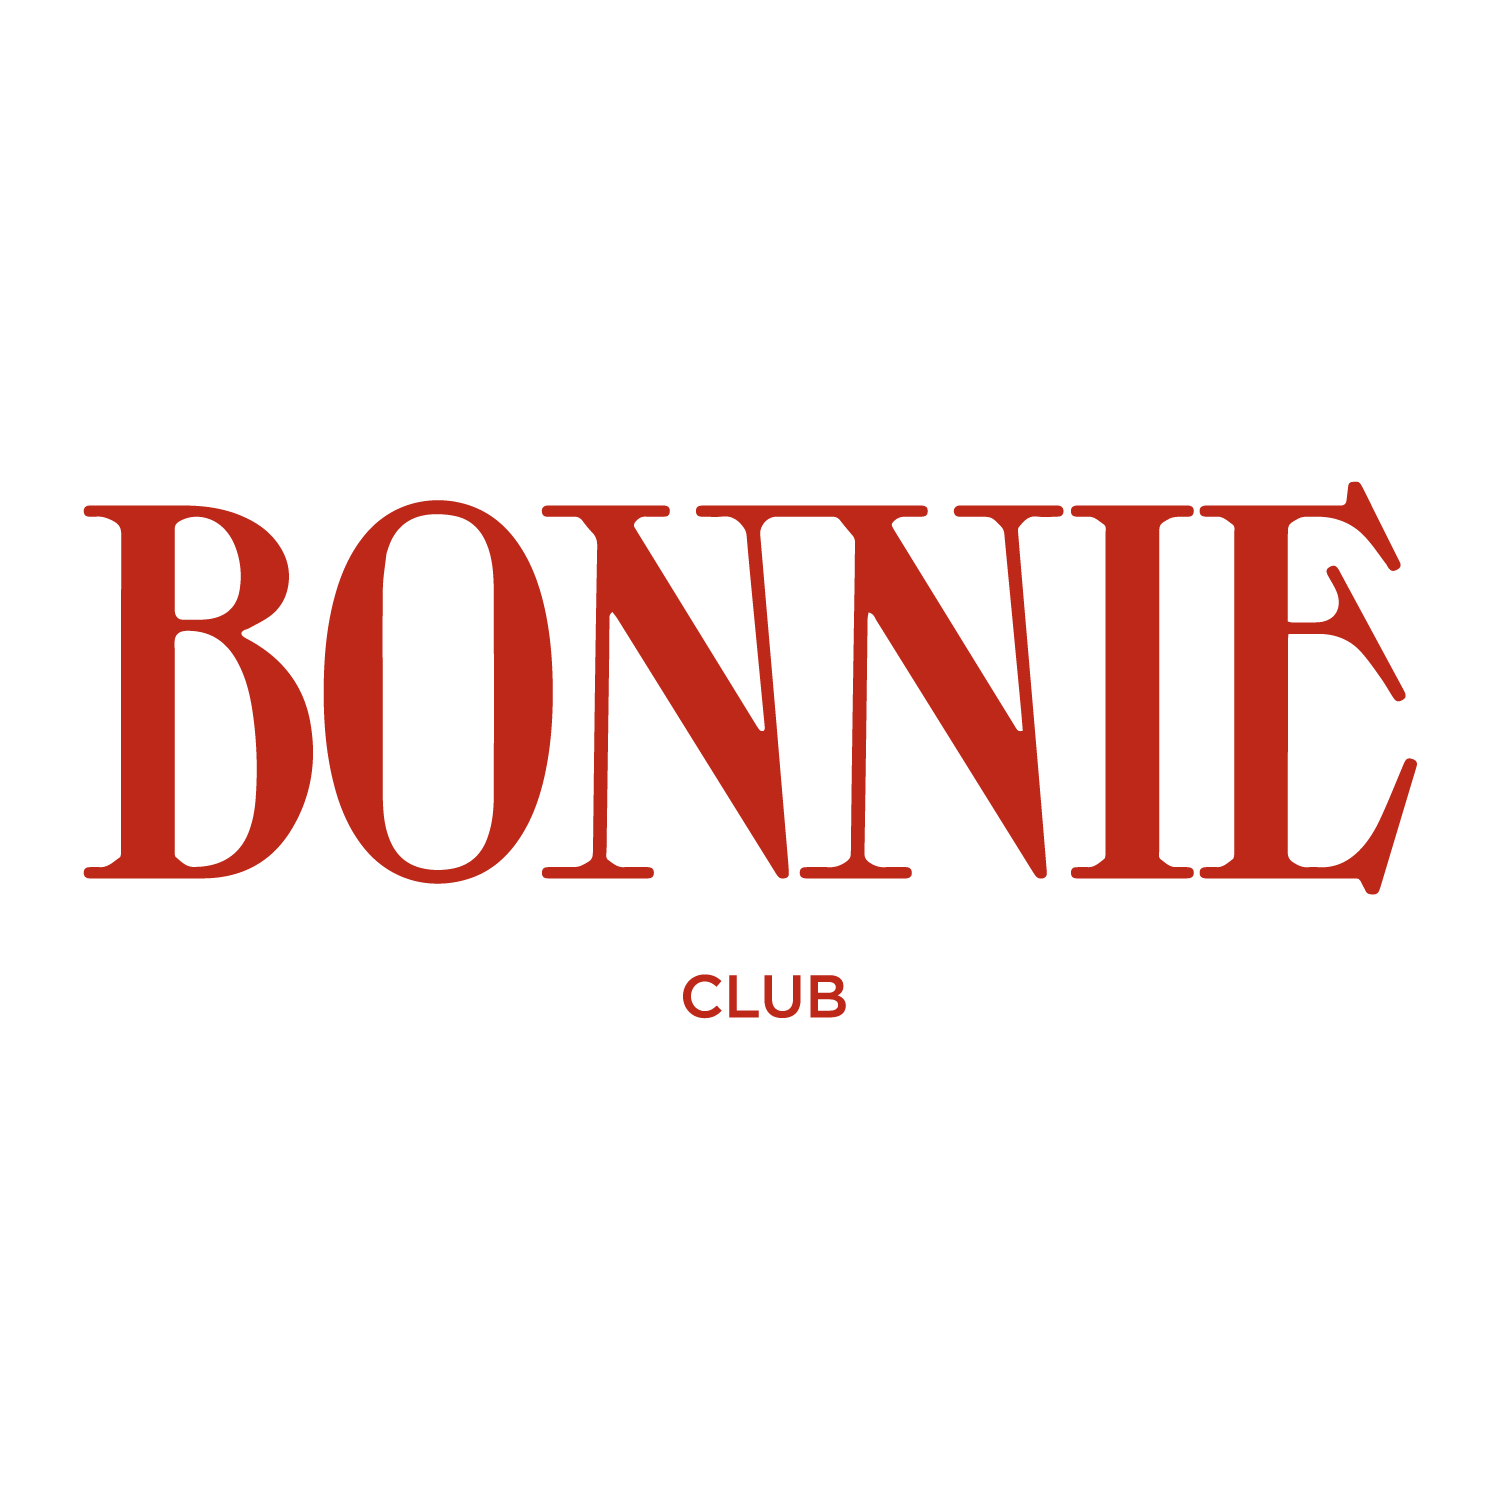 Bonnie Club Logo